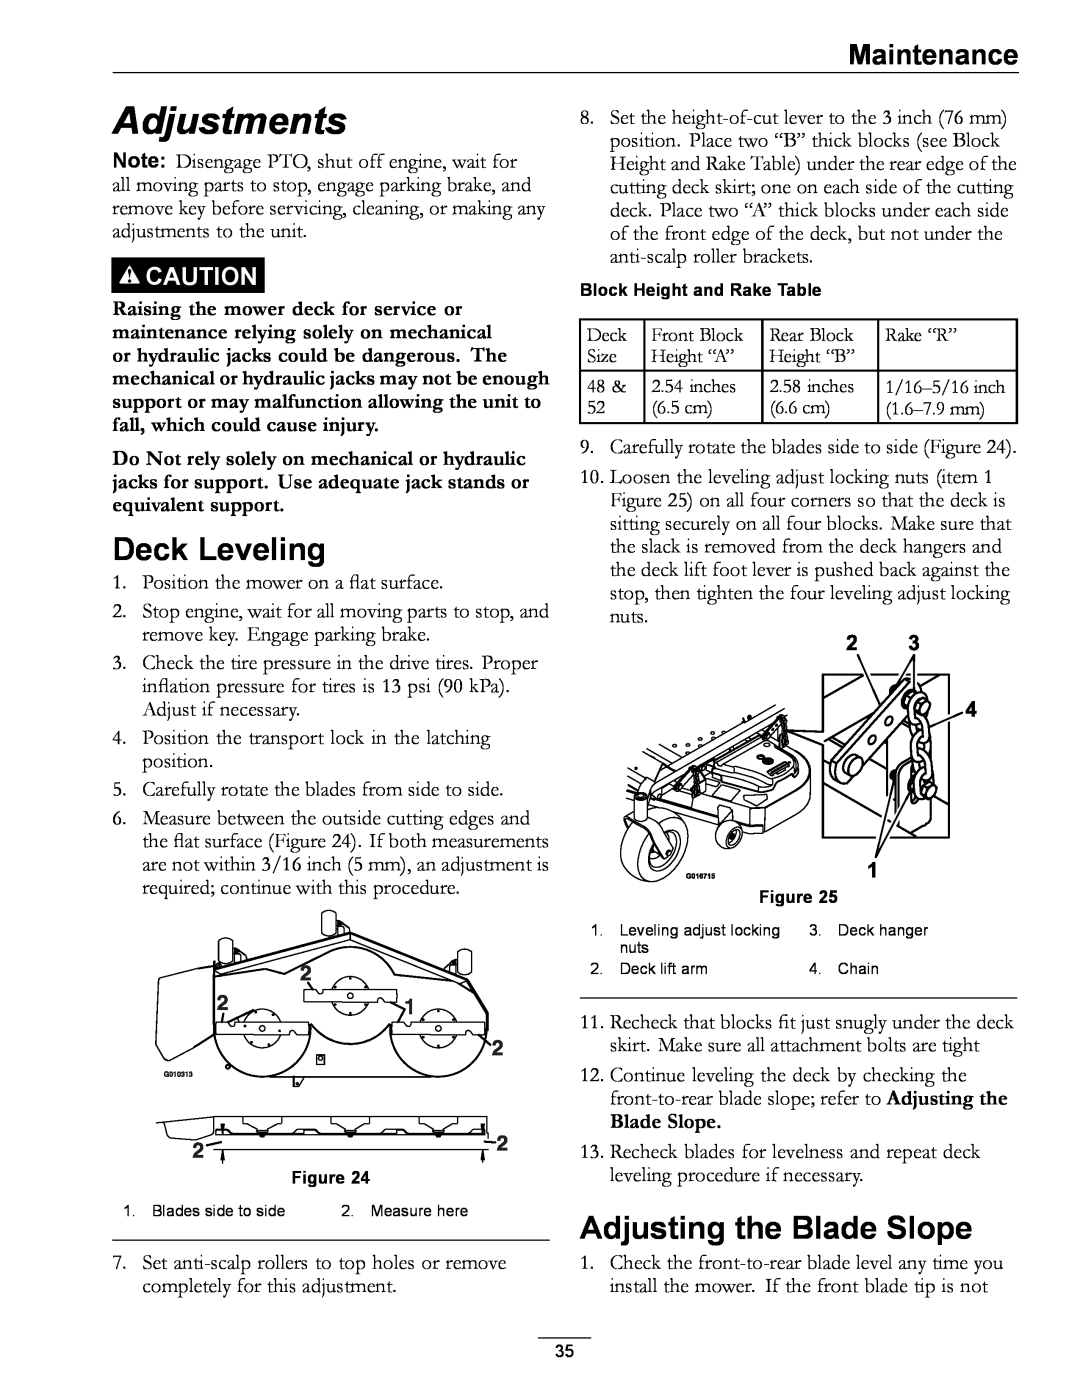 Exmark 4500-996 Rev A manual Adjustments, Deck Leveling, Adjusting the Blade Slope, Maintenance 